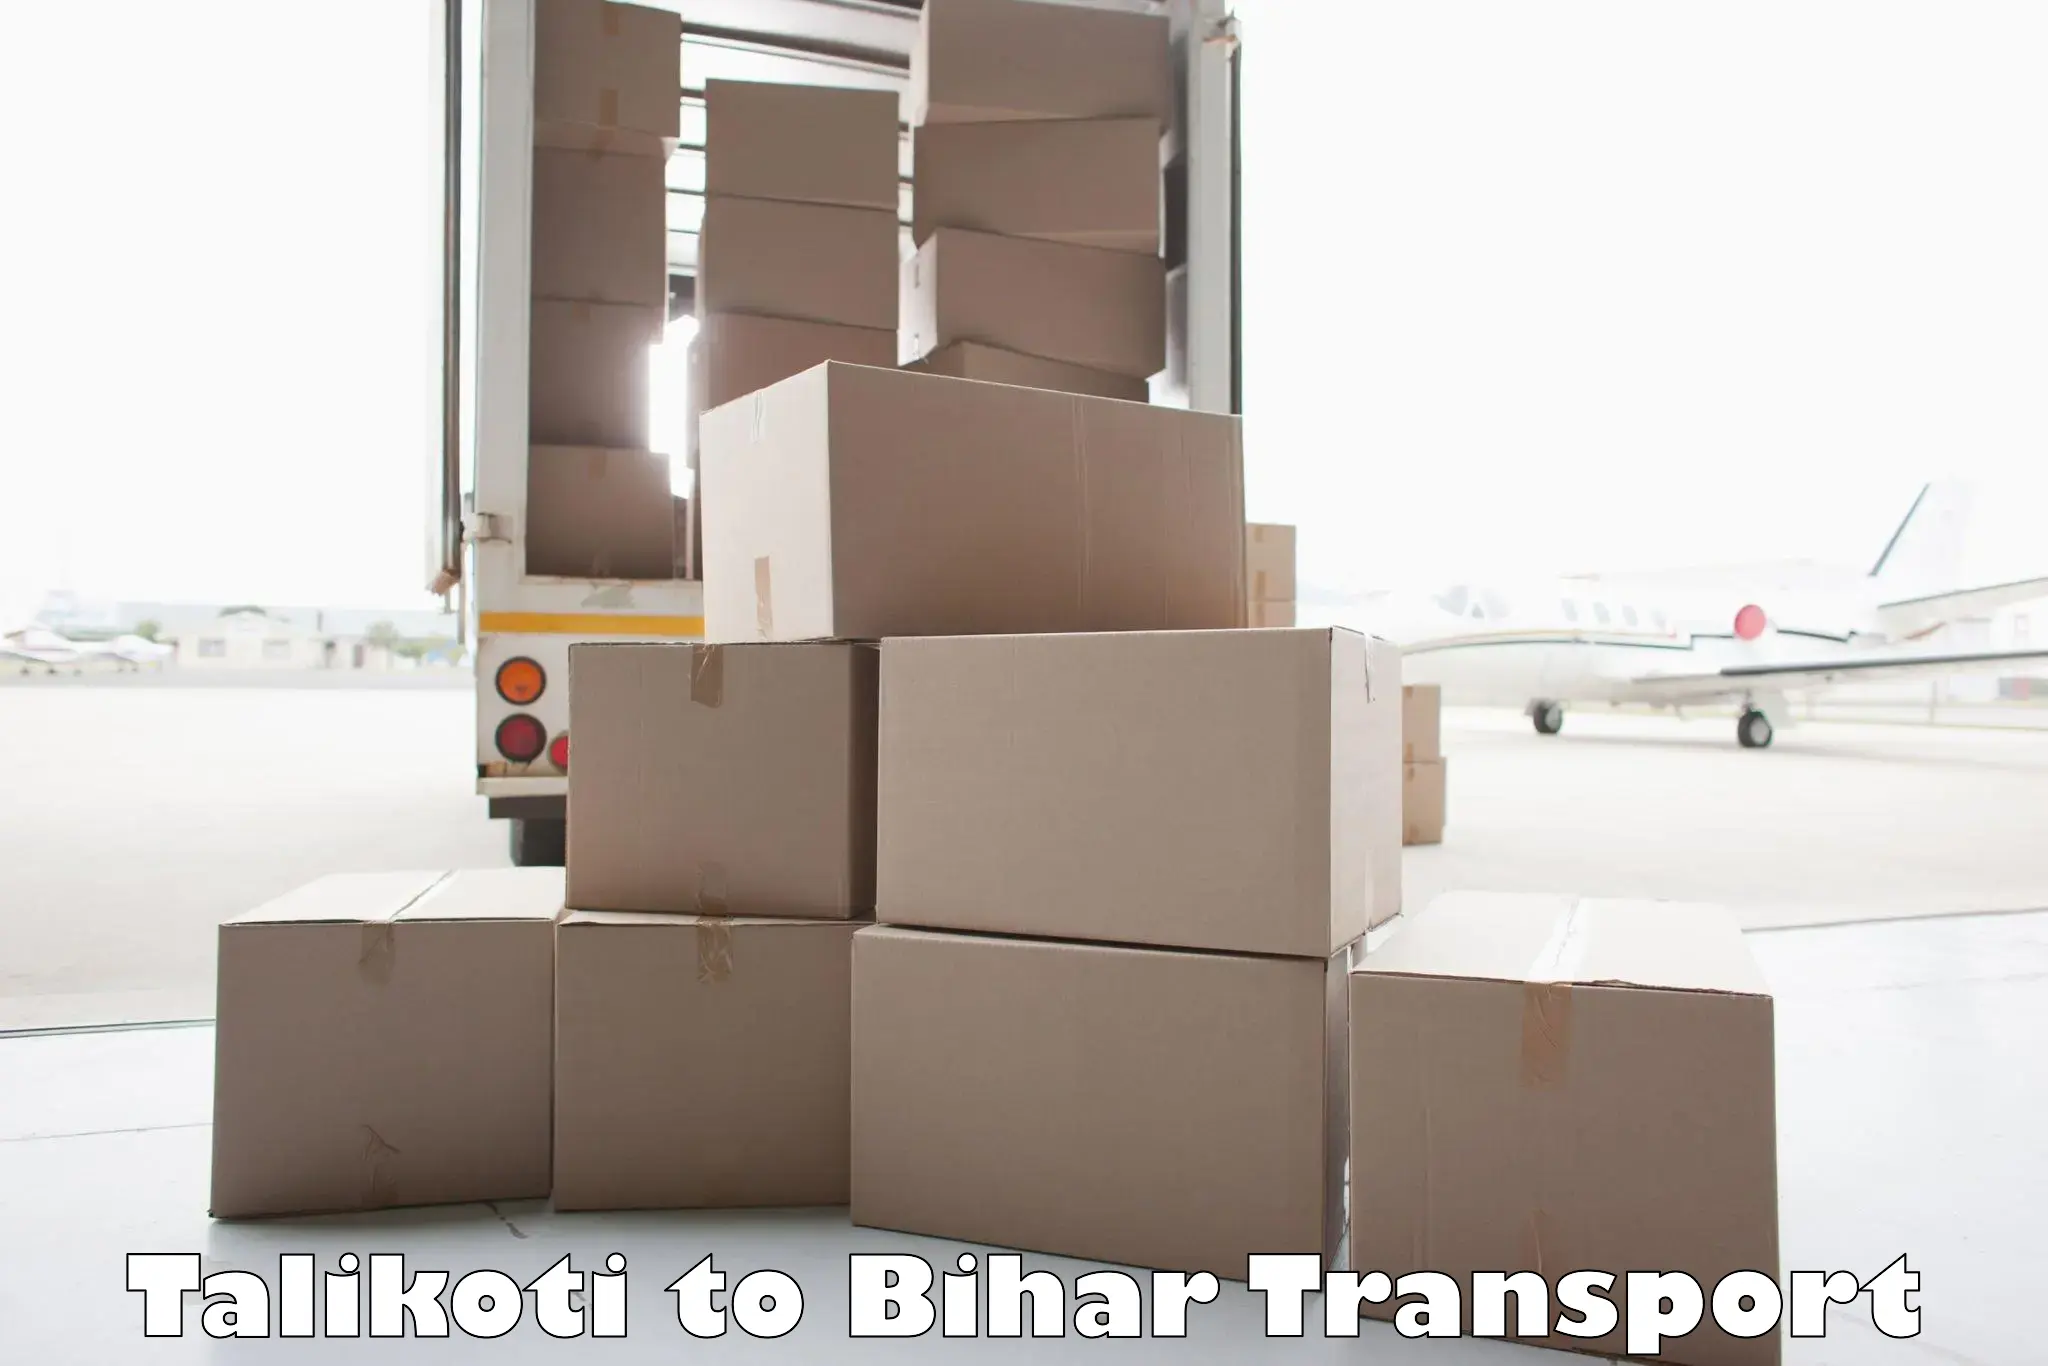 Nearby transport service Talikoti to IIIT Bhagalpur